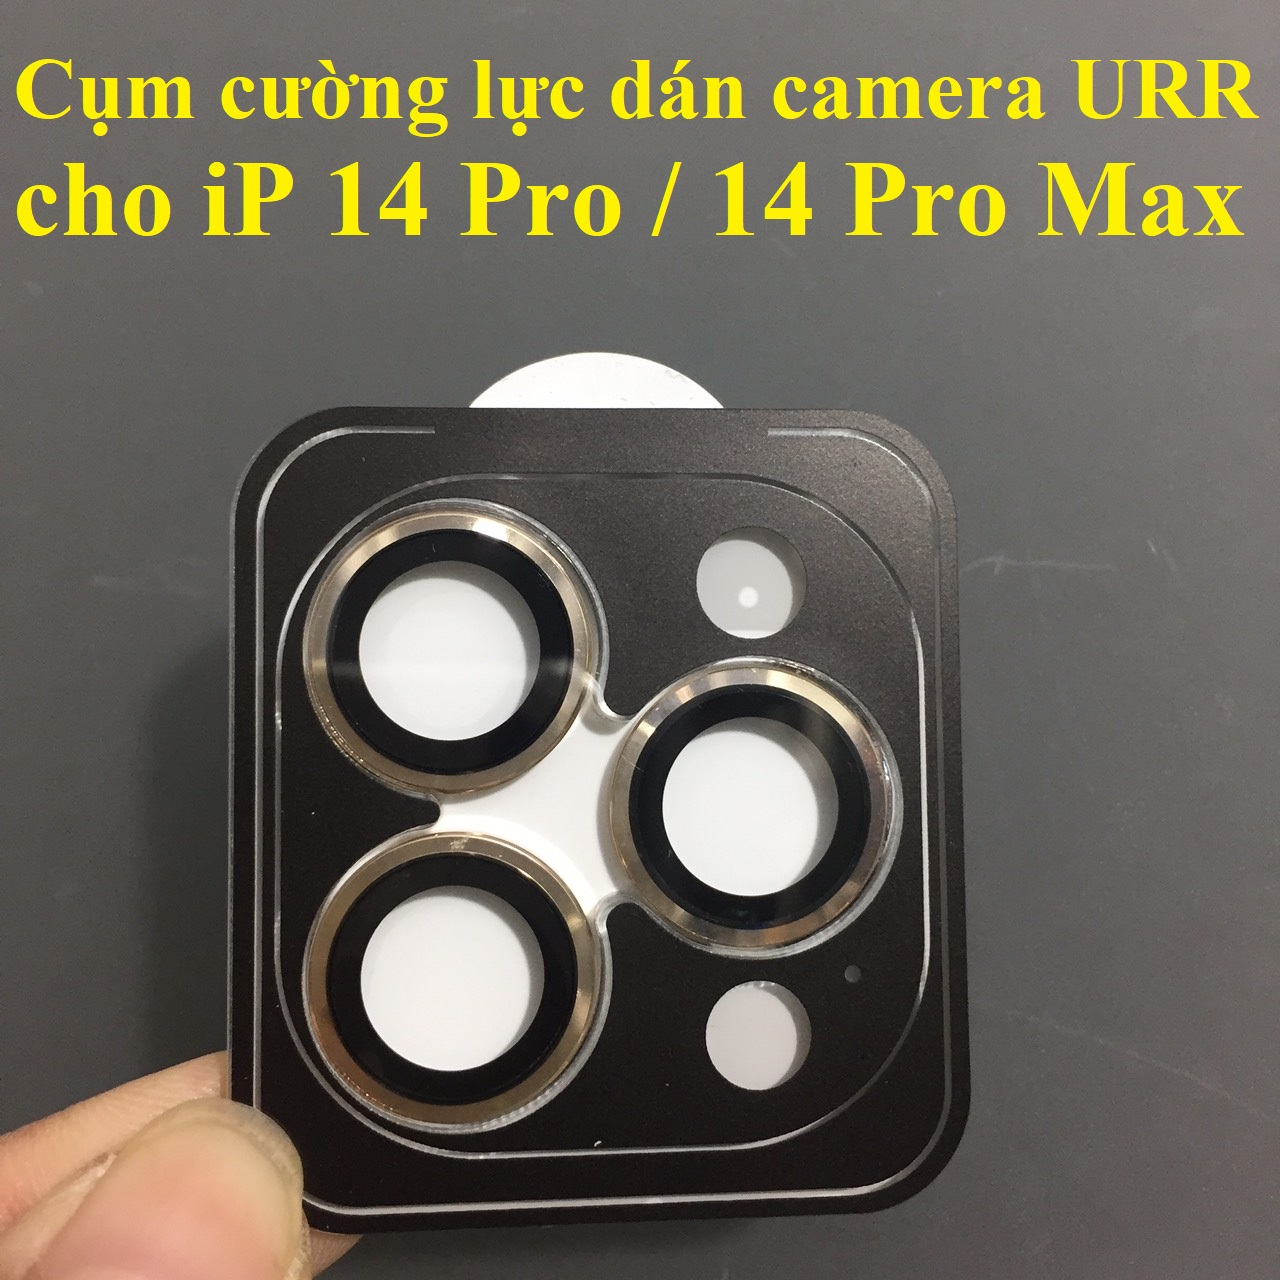 [ 14 pro ; 14Pro Max ] Cụm cường lực Dán camera cho iP 14 series 2022 thương hiệu URR 3D PVD AR _ Hàng chính hãng